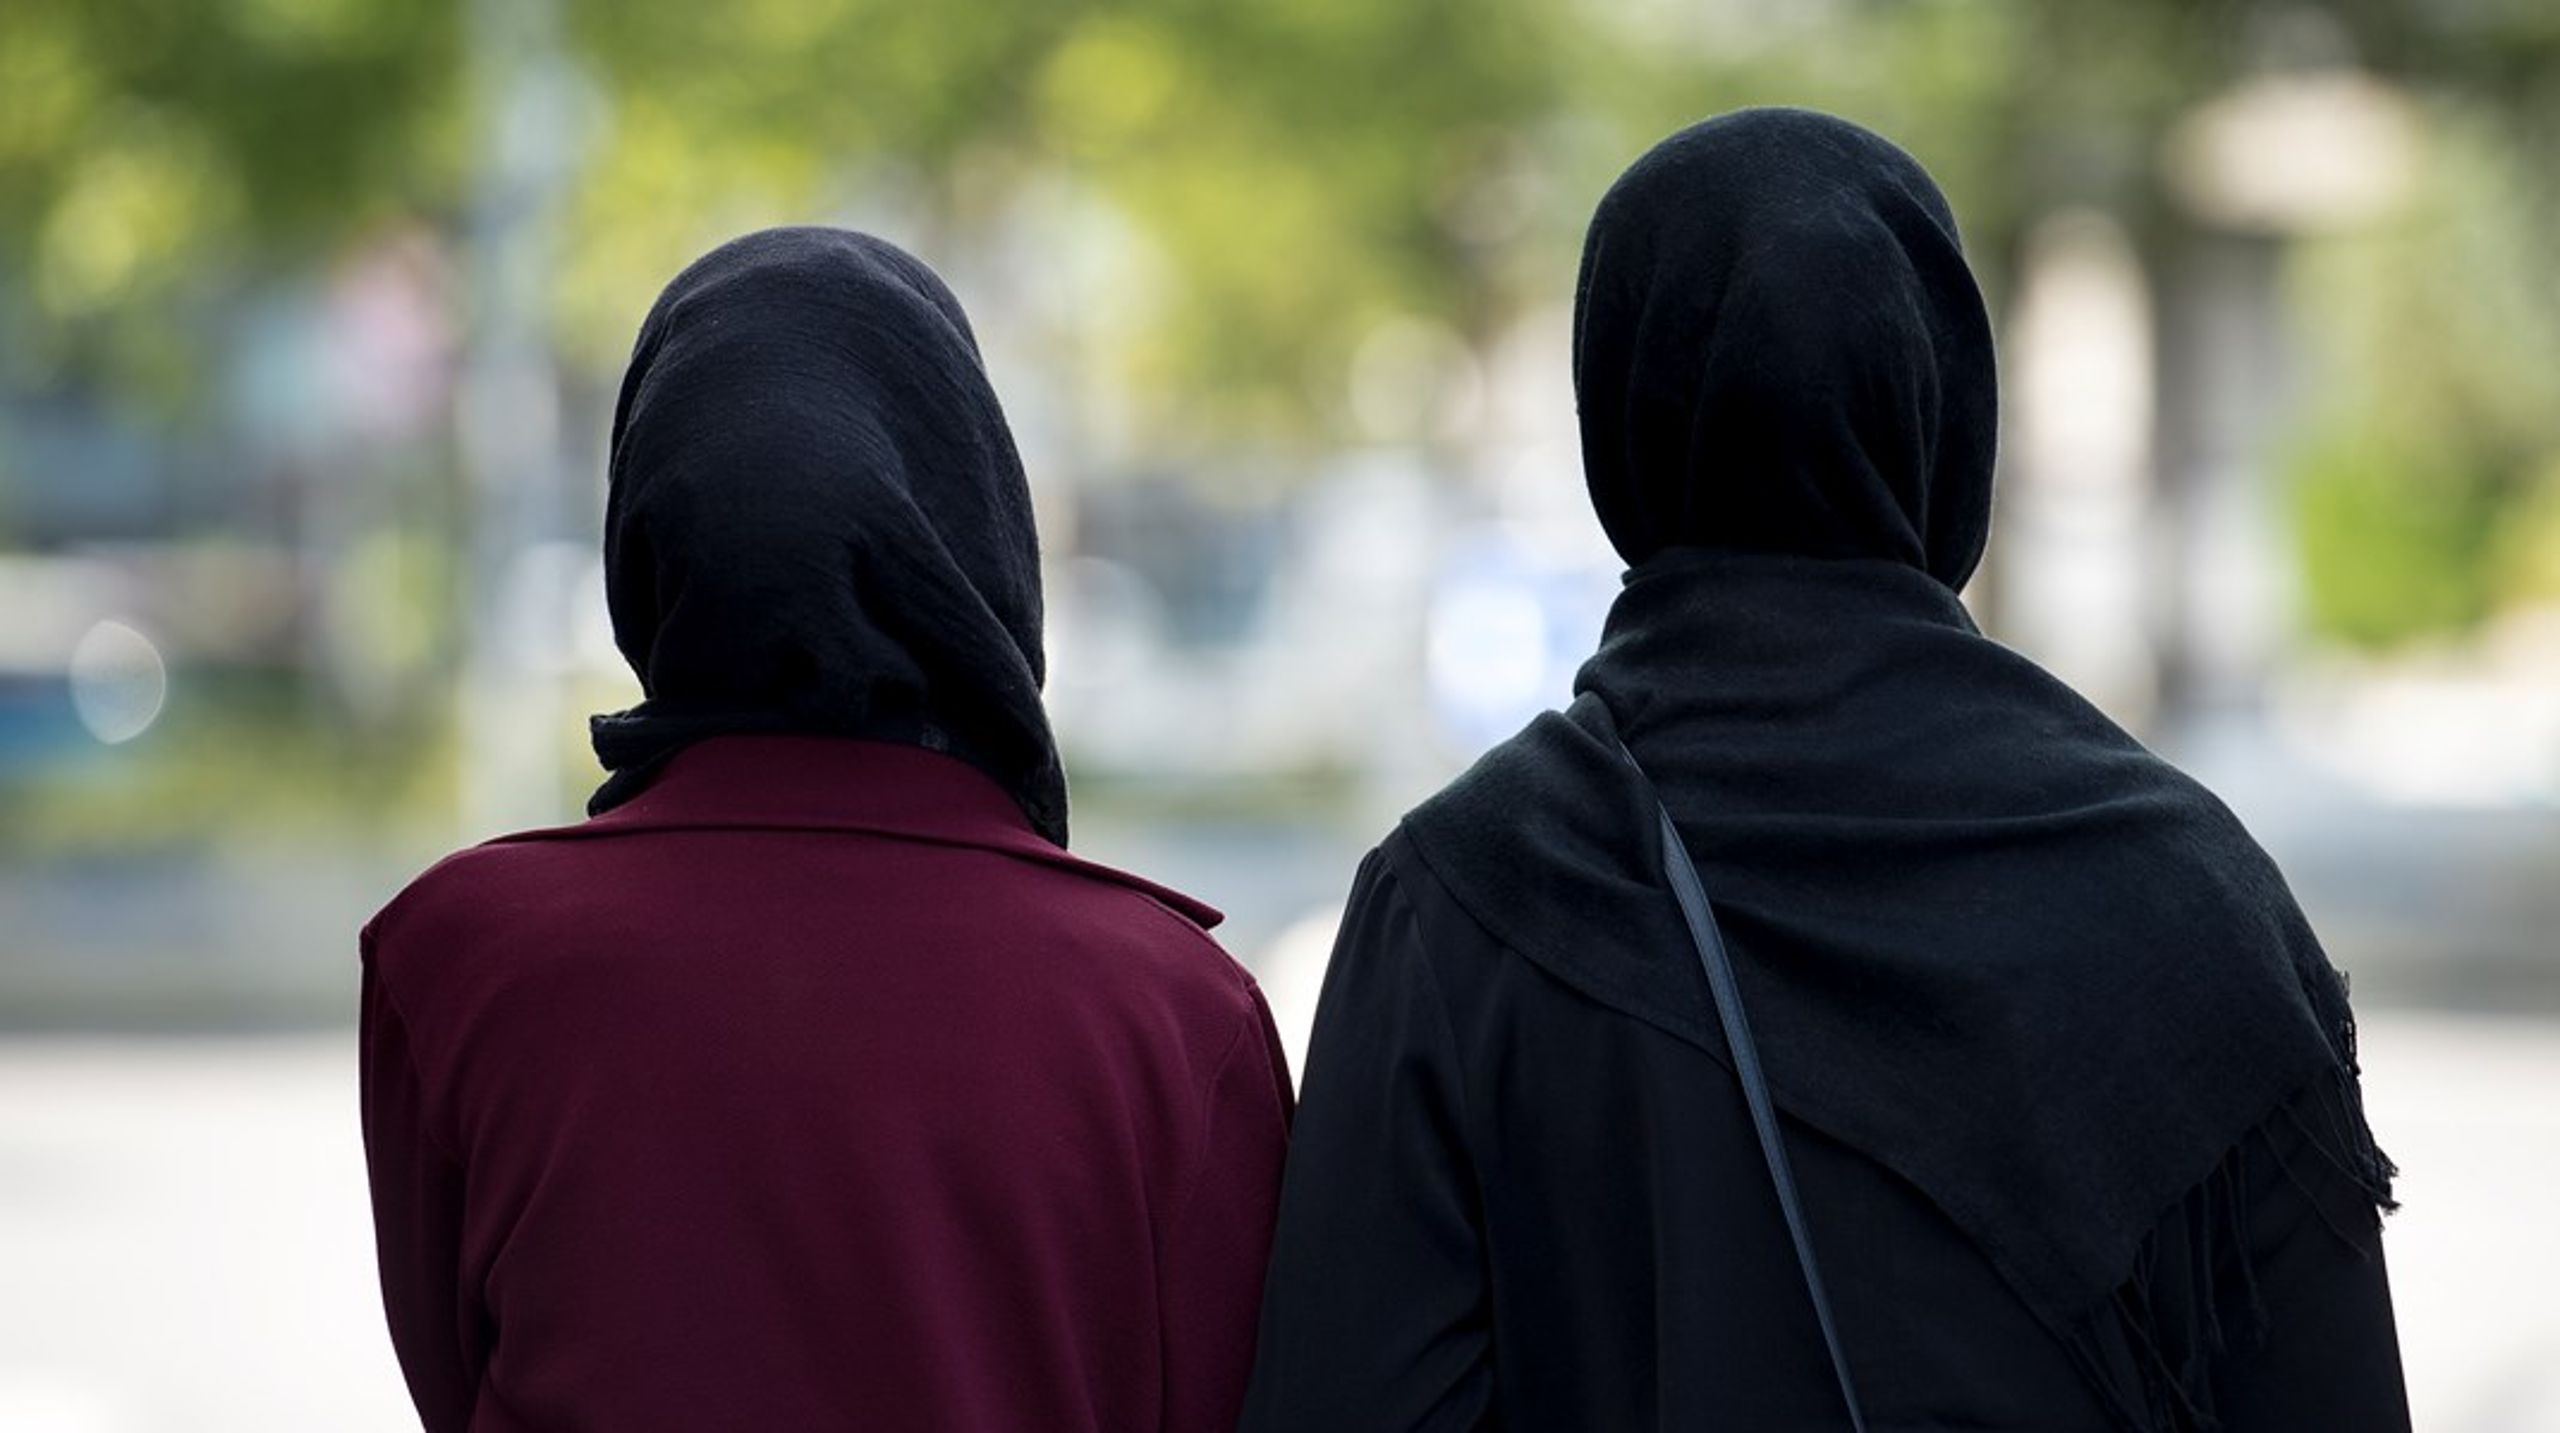 ”Många av dem som invandrat tror nu att Sverige är en plats där de kan fortsätta leva helt enligt de normer de hade i hemlandet. De har också lärt sig att anklaga dem som invänder mot kulturellt relaterade företeelser med ursprung utanför Sverige för rasism eller islamofobi”, skriver Josefin Utas.